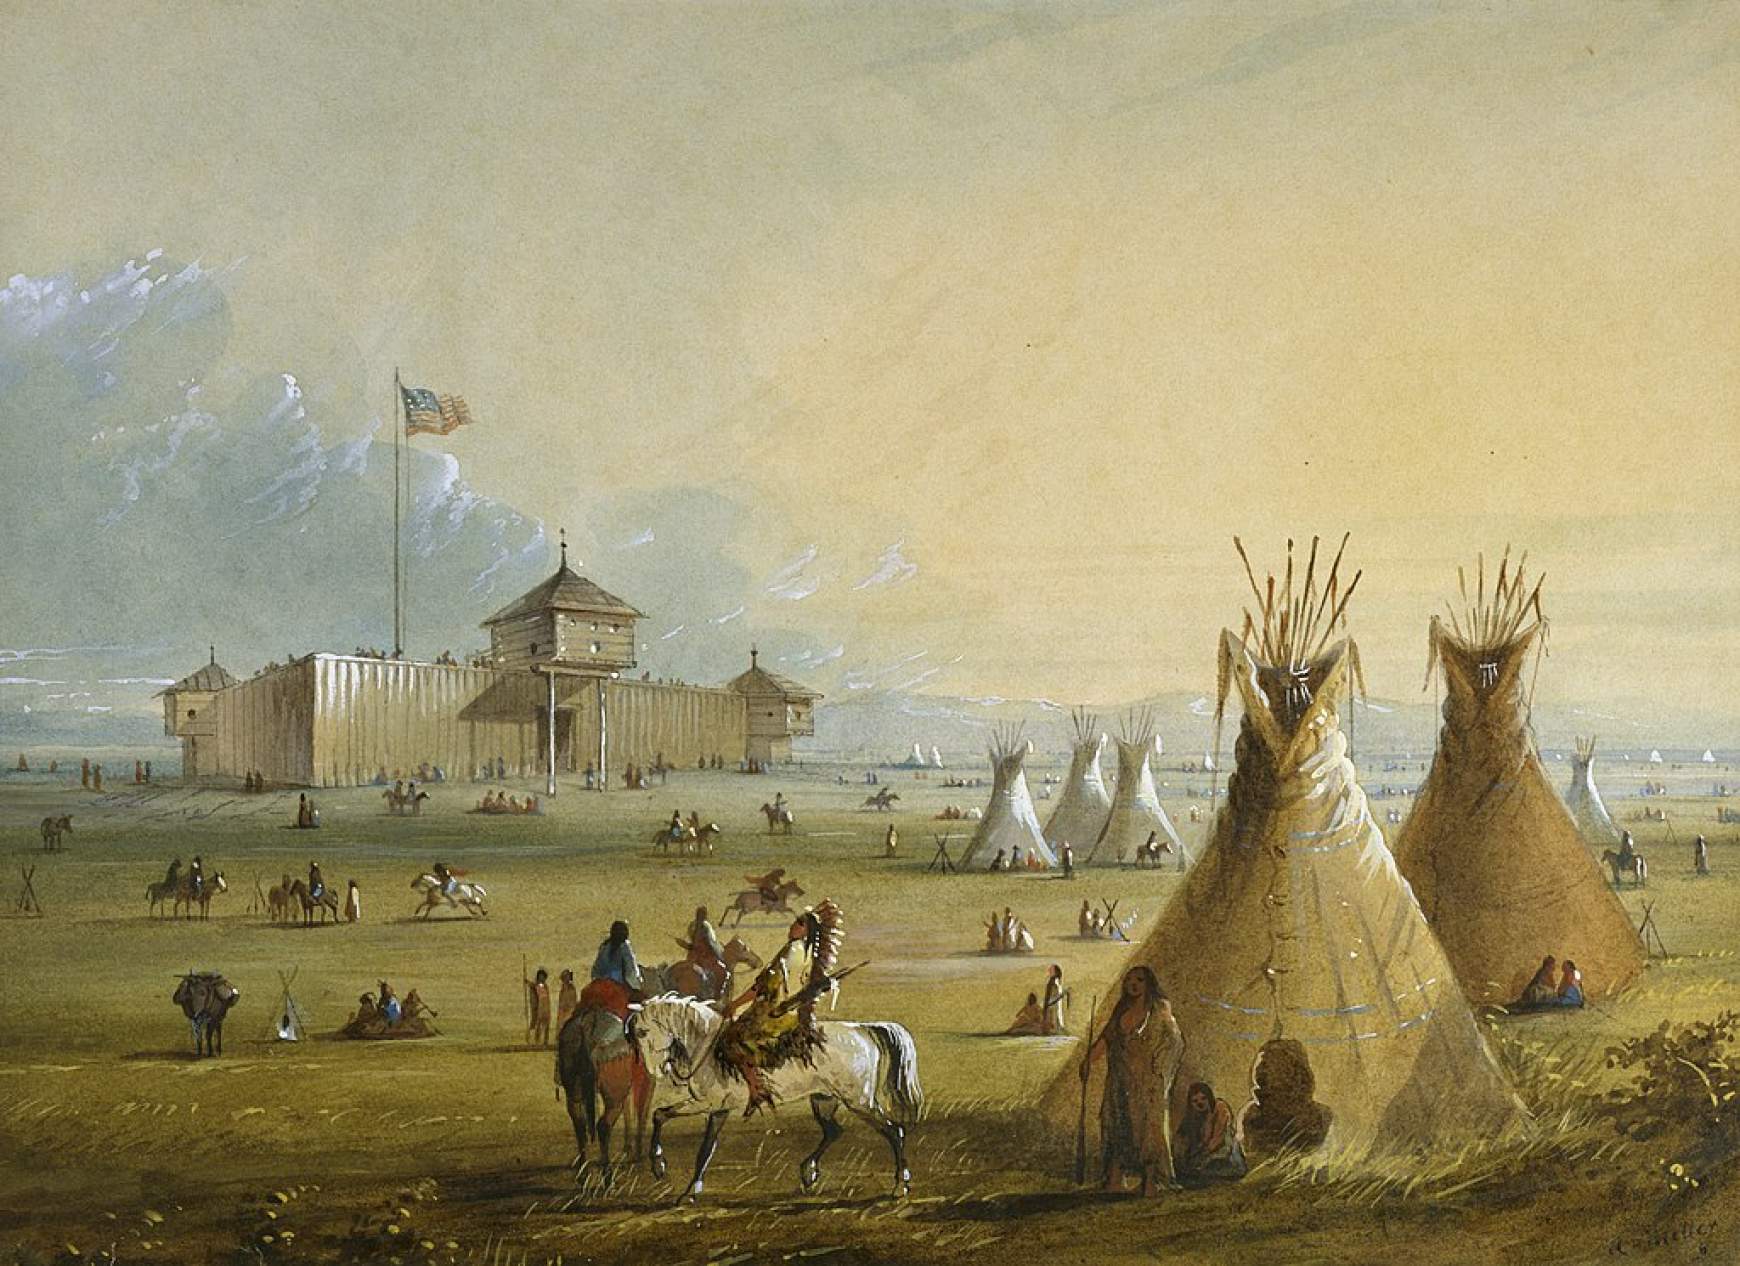 Fort Laramie Alfred Jacob Miller festményén. A háborút megelőzően az indiánok gyakran töltötték a telet az erőd környékén